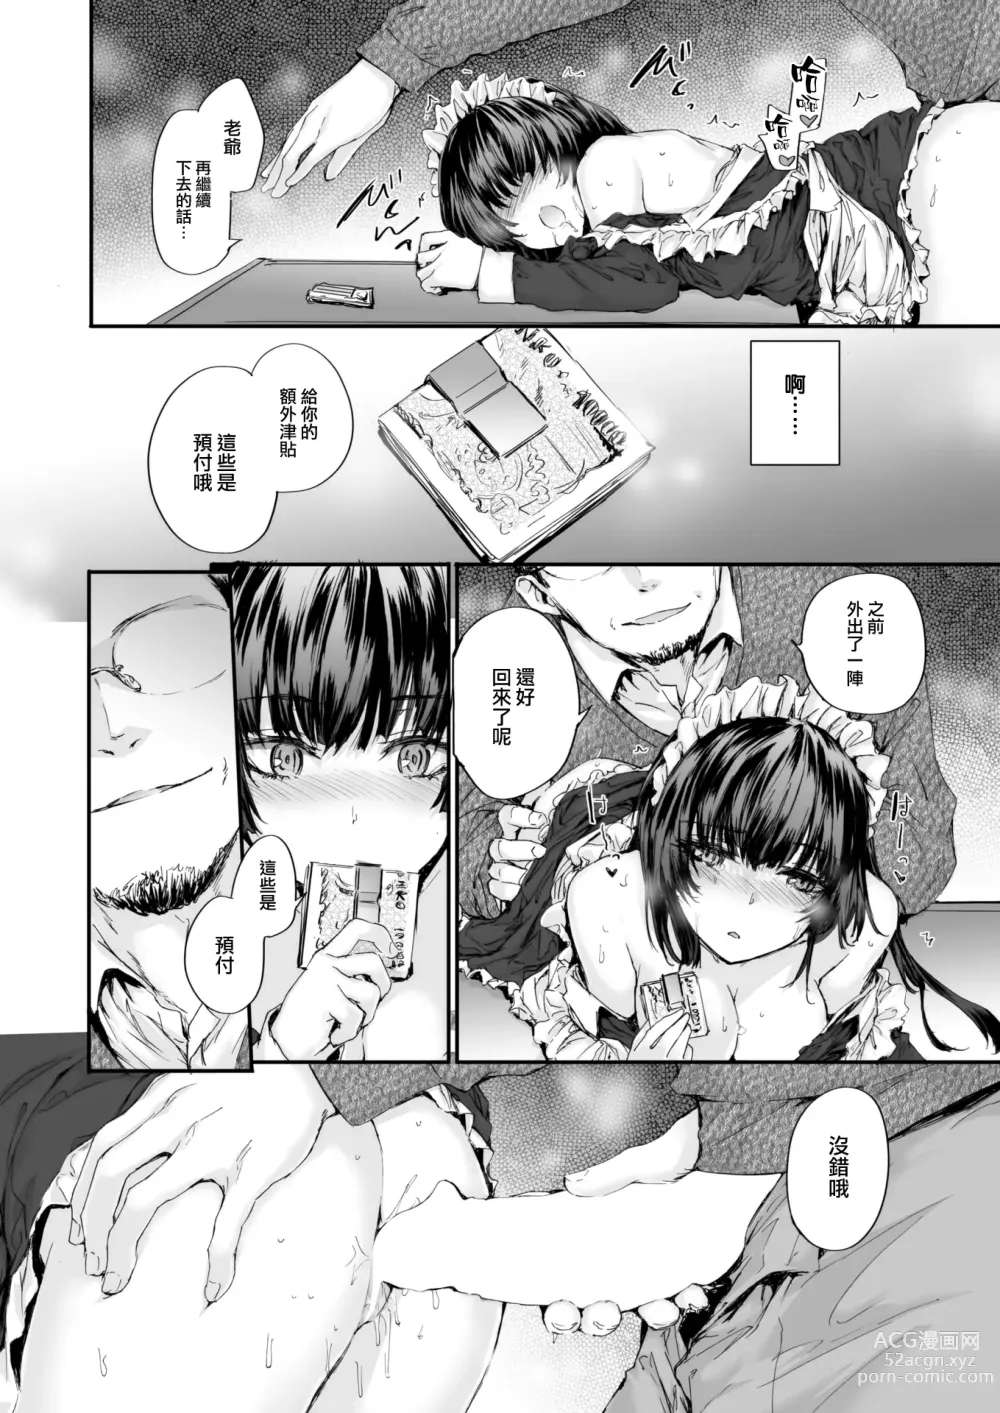 Page 13 of manga Haken Maid no Tomotakasan